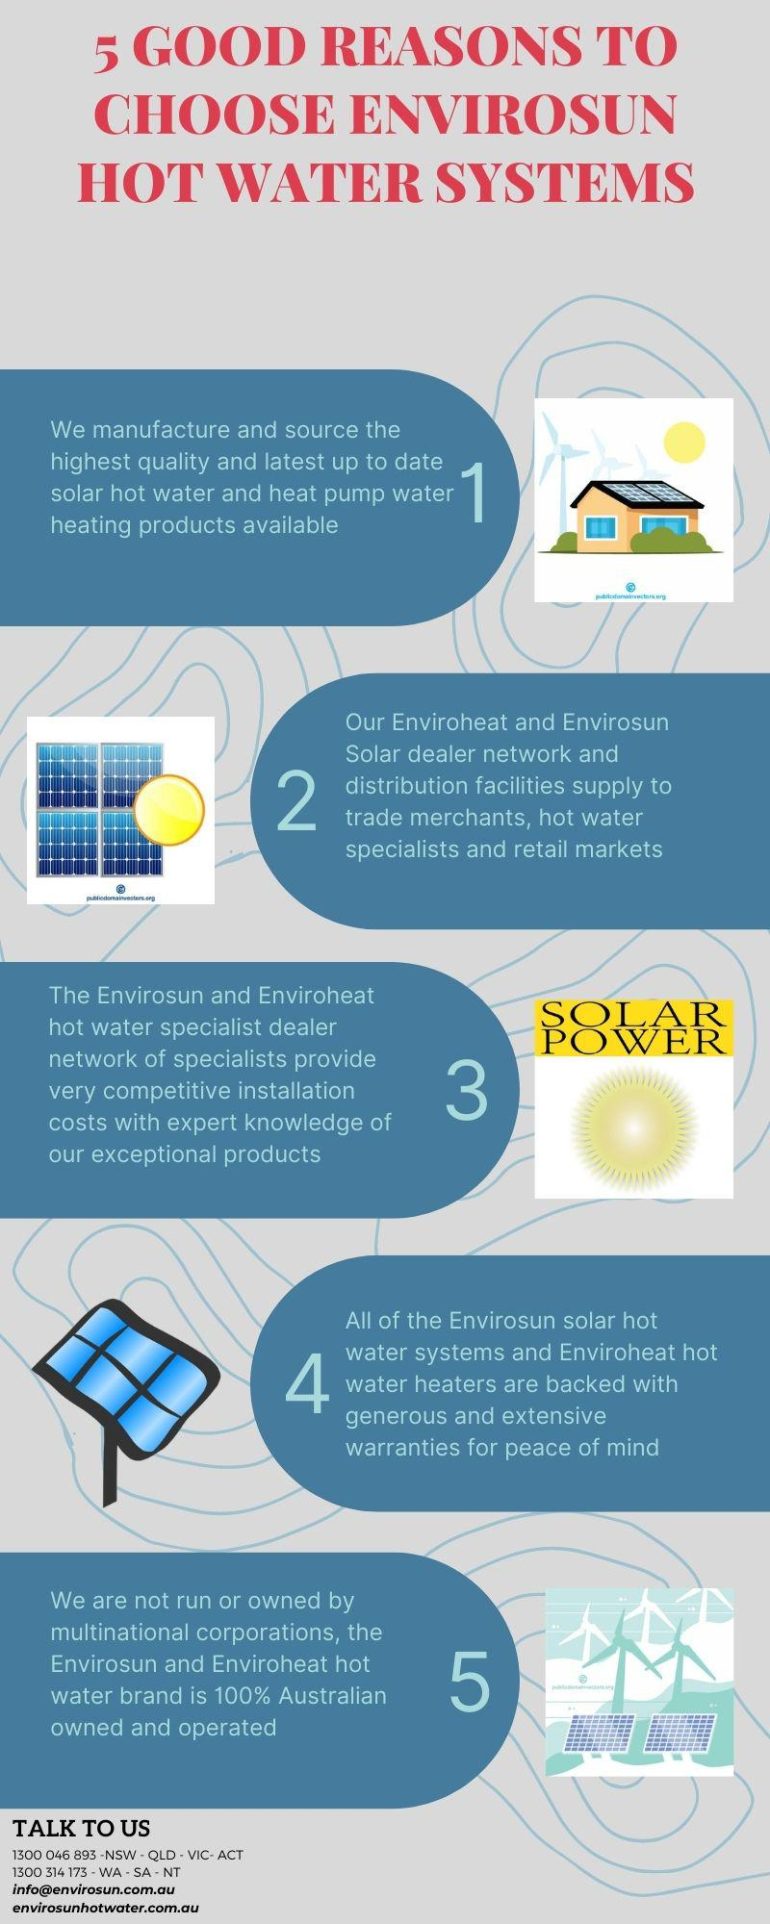 5 Good Reasons To Choose Envirosun Hot Water Systems